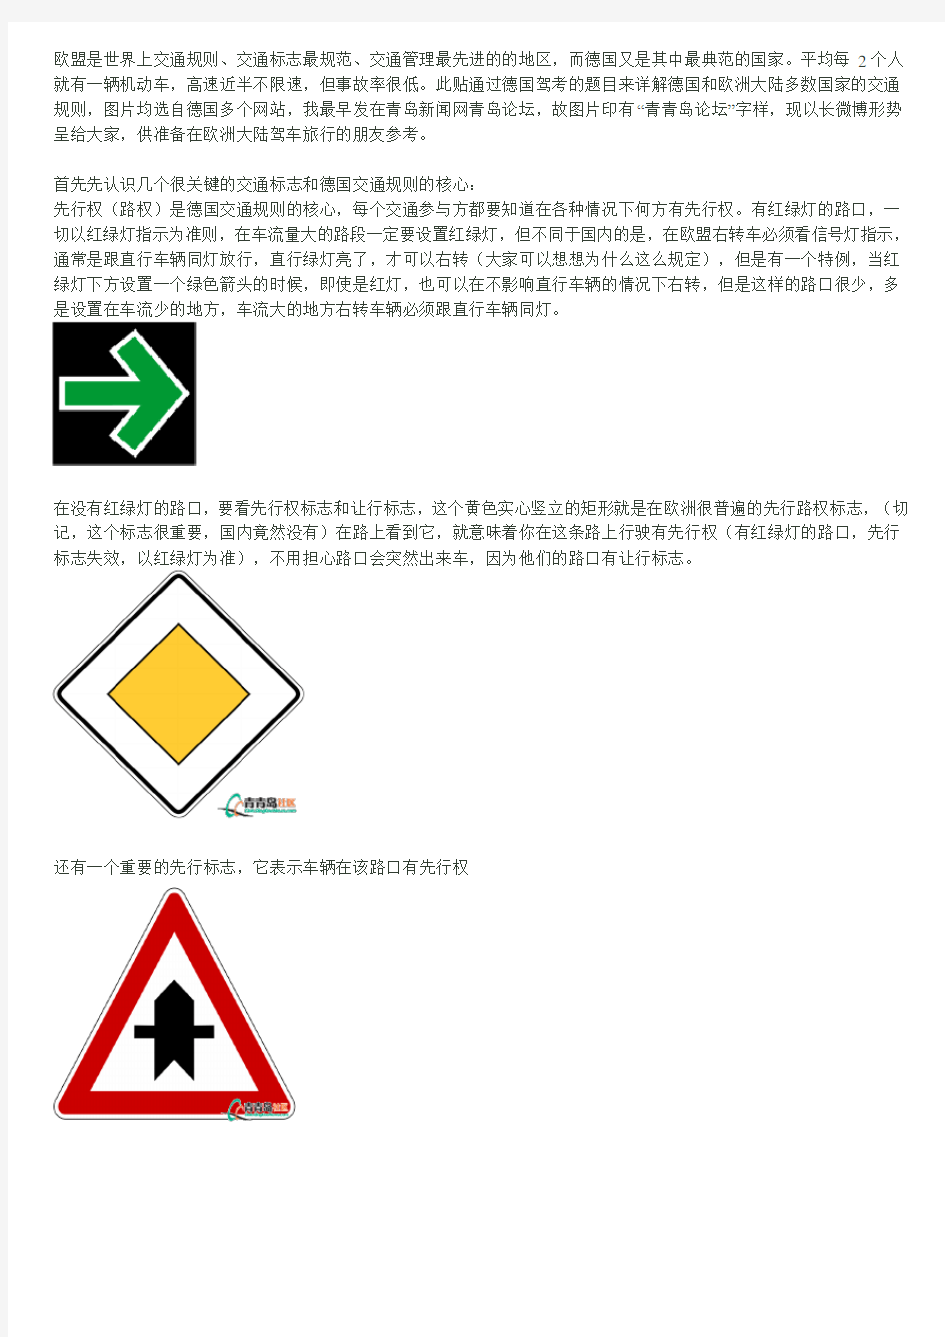 德国交通规则和常见交通标志图文详解-欧洲大陆驾车旅行参考